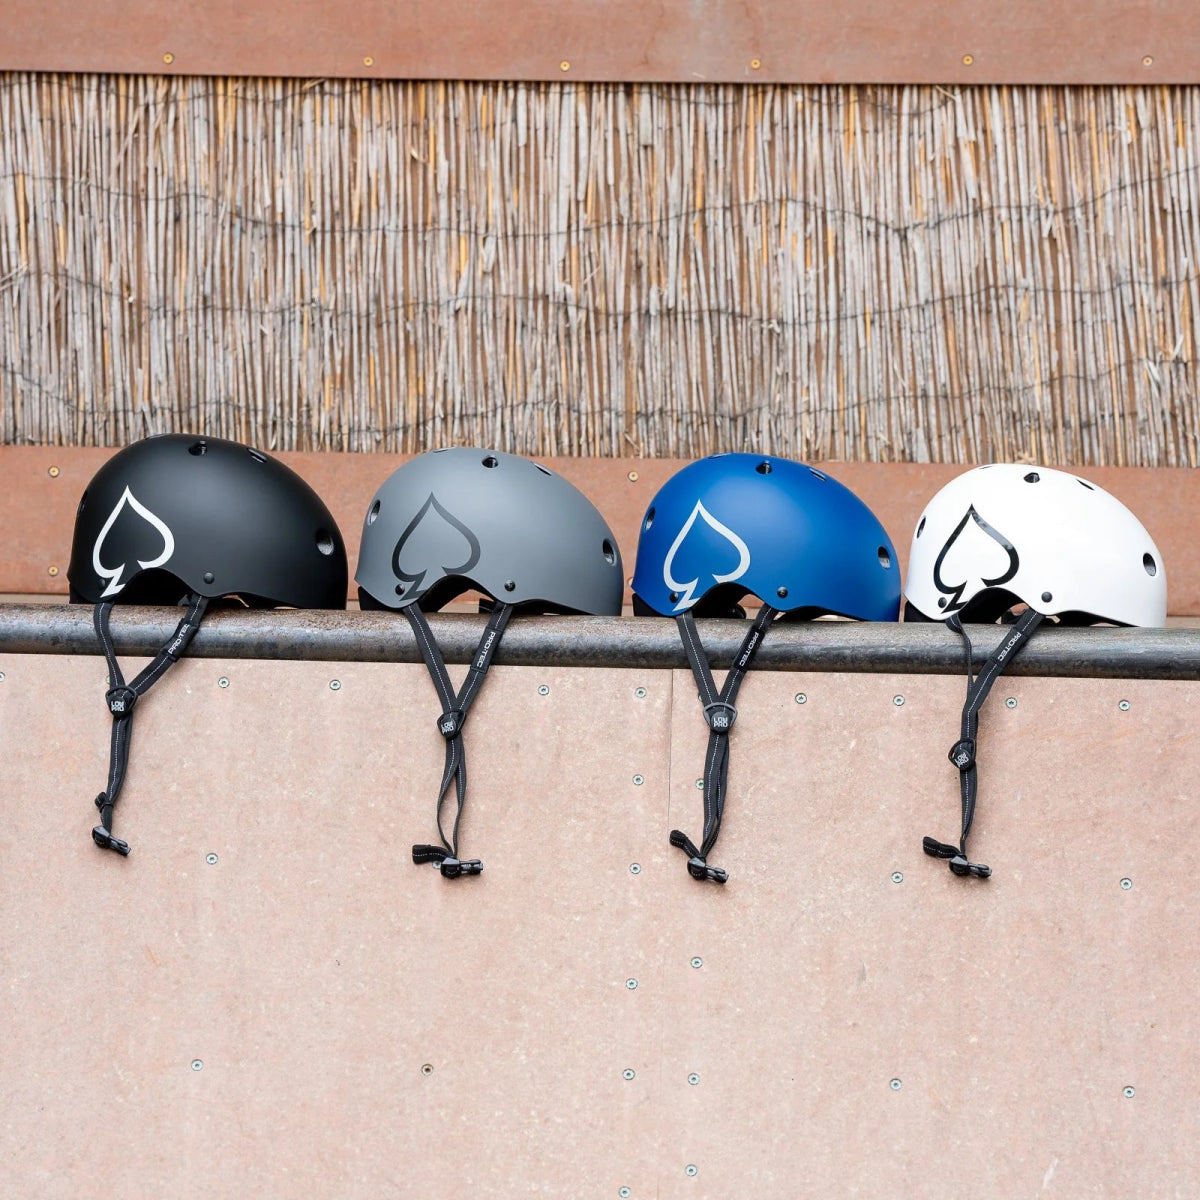 Pro - Tec Low Pro Matte Black - Gear - Helmets